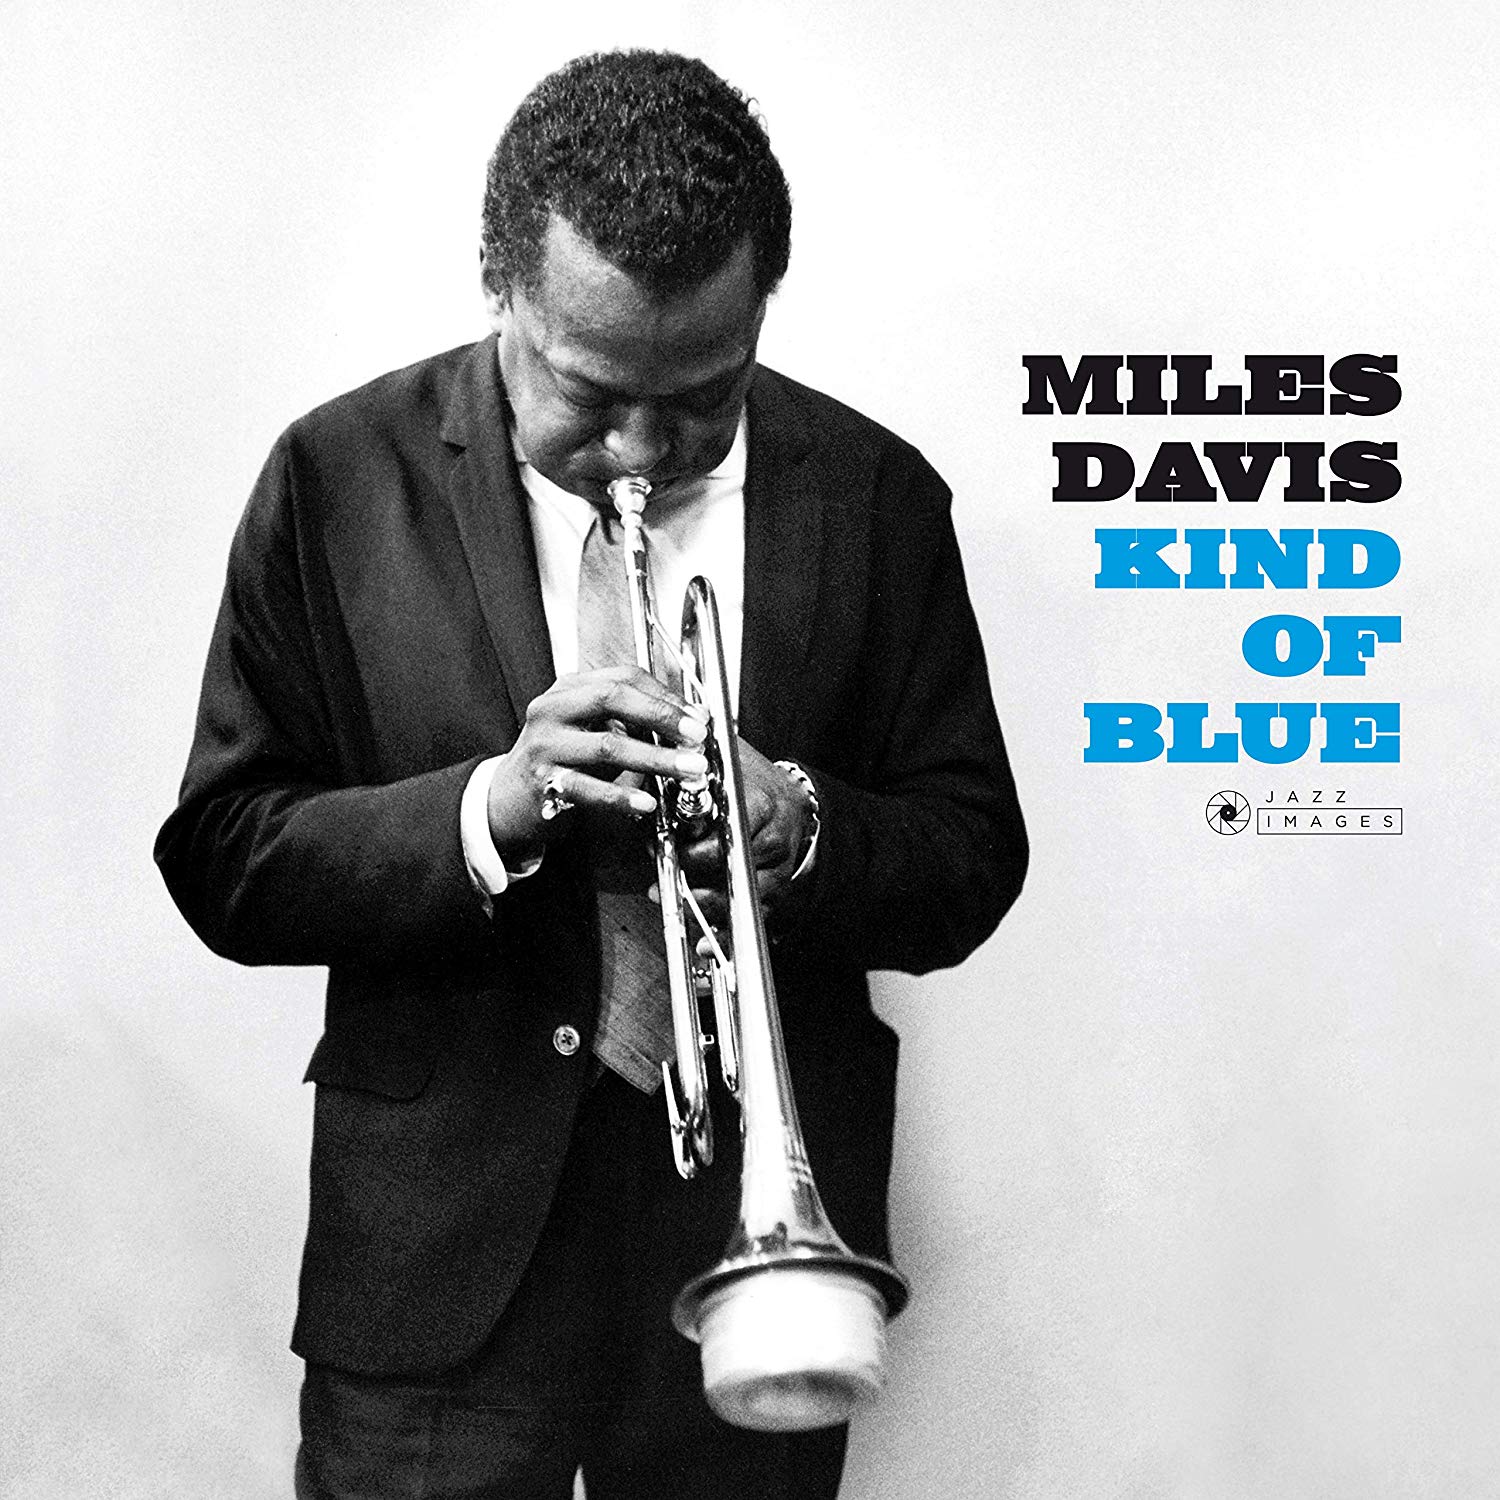 Miles davis blue miles. Kind of Blue Майлз Дэвис. Miles Davis - kind of Blue (1959). Miles Davis - kind of Blue (Full album) 1959. Майлз Девис альбом kind of Blue.